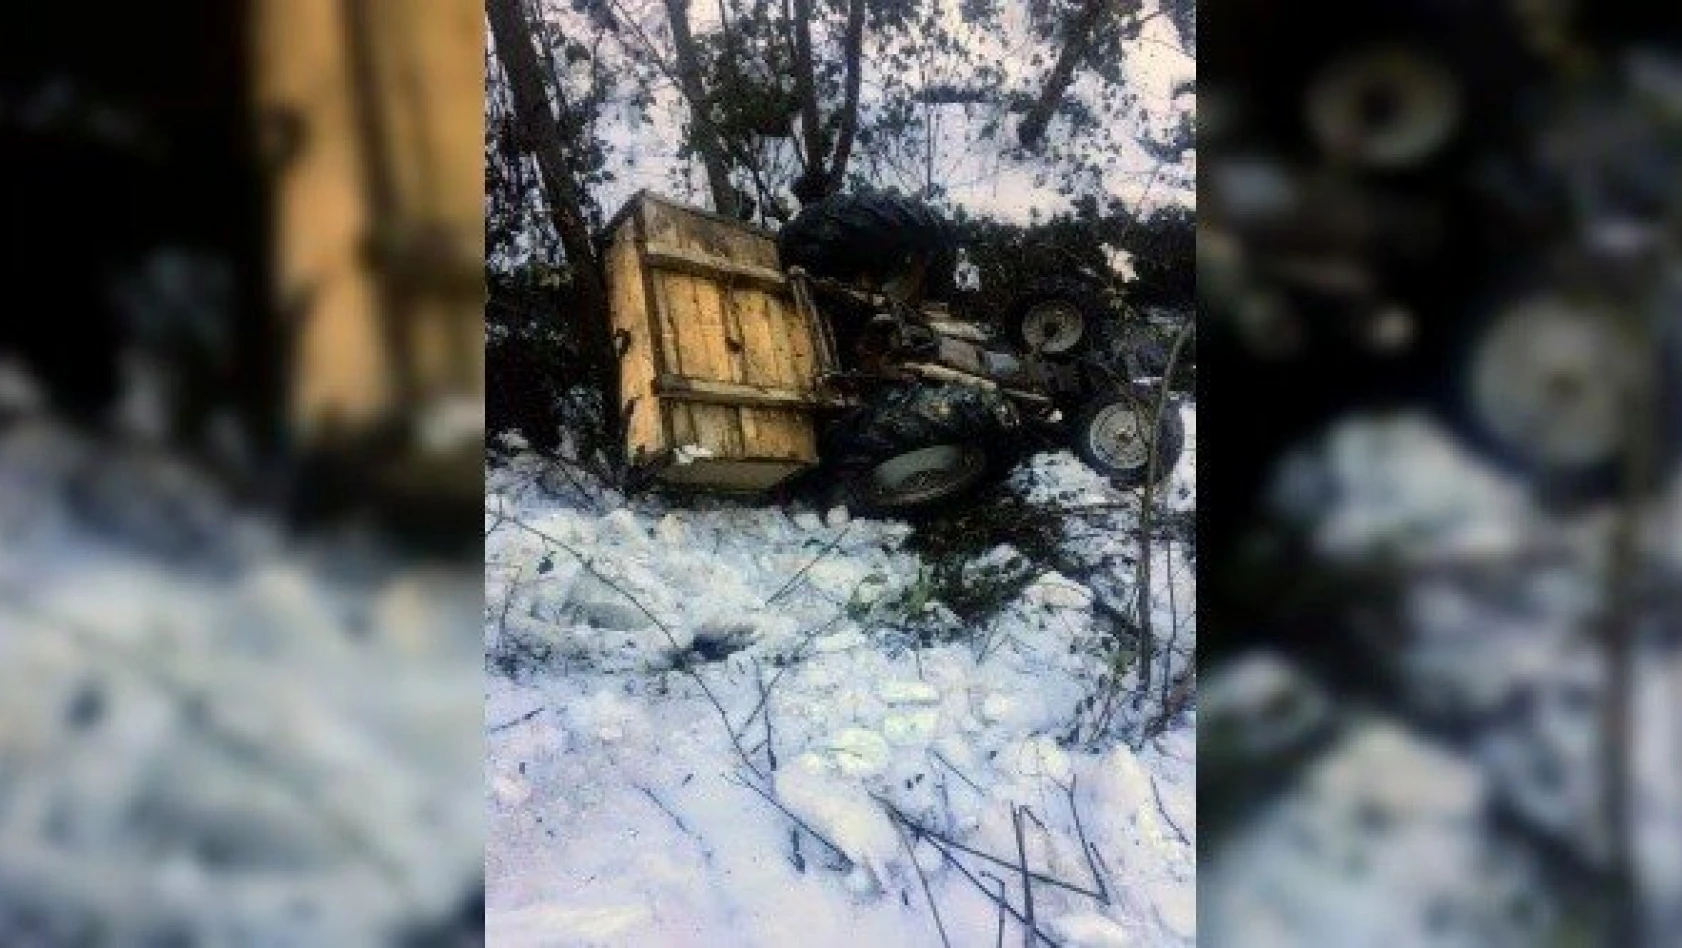 Kastamonu'da traktör devrildi: 1 yaralı